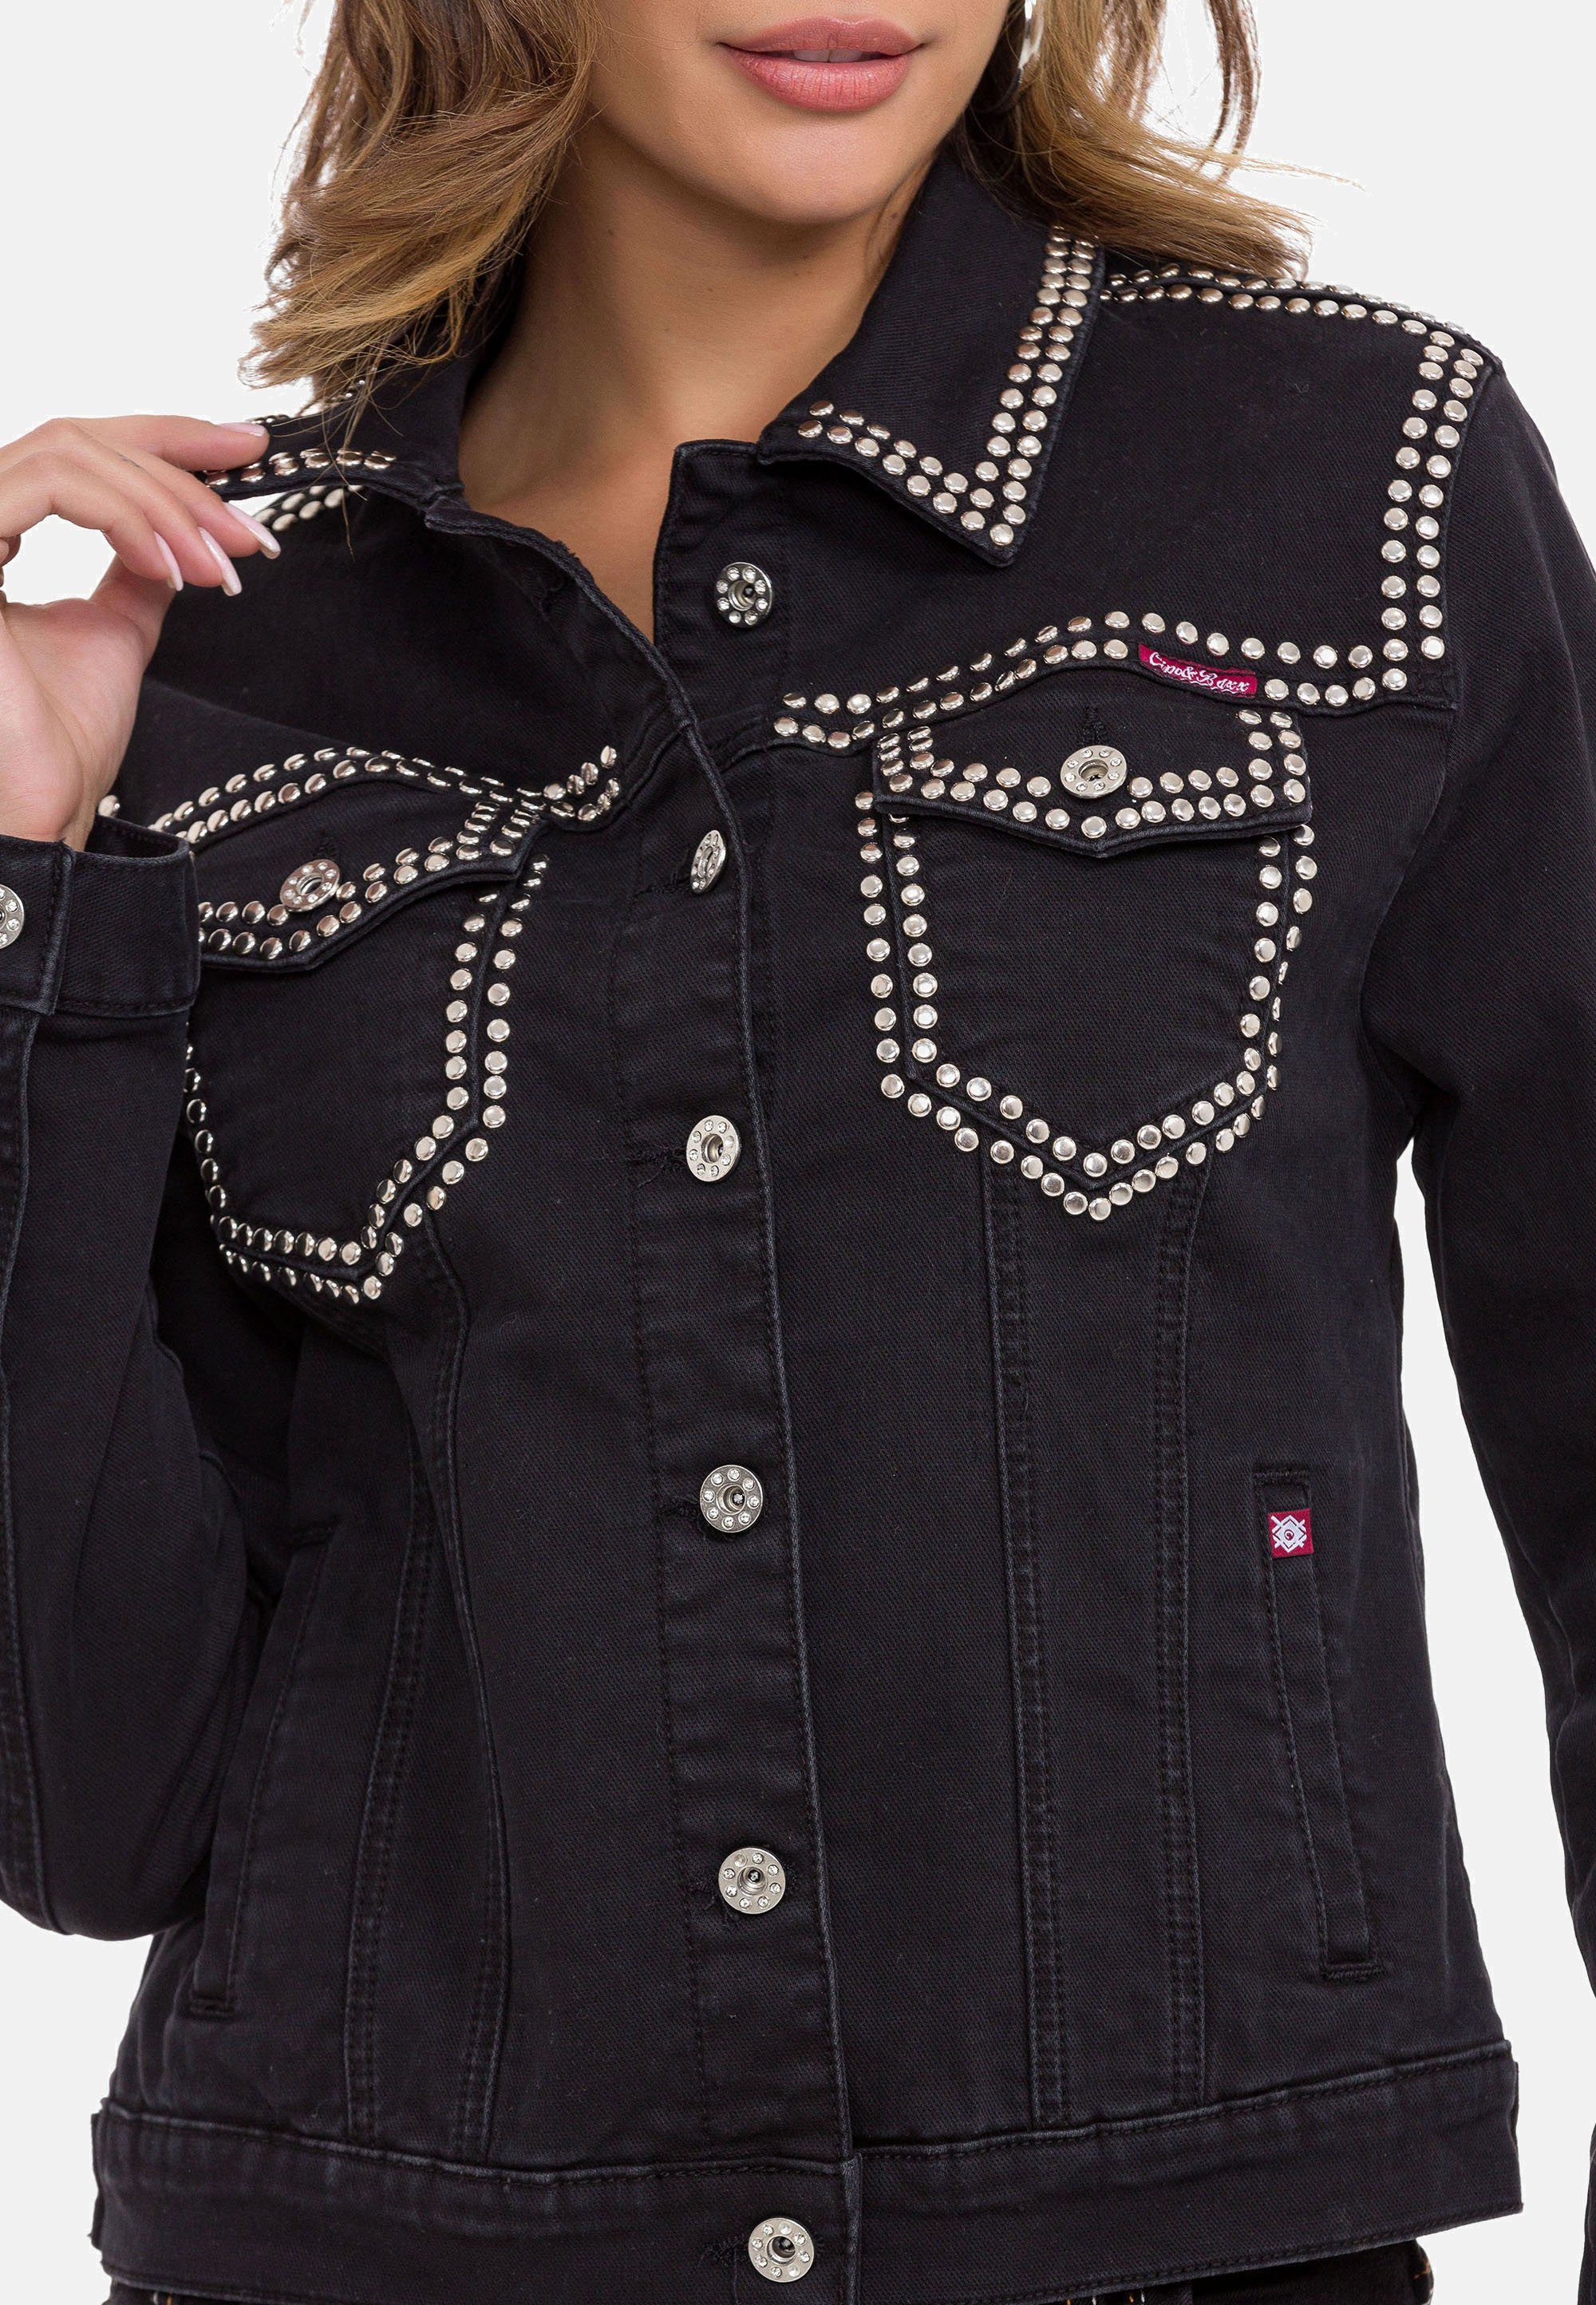 Jeansjacke modernen Baxx schwarz & Cipo mit Nieten-Details